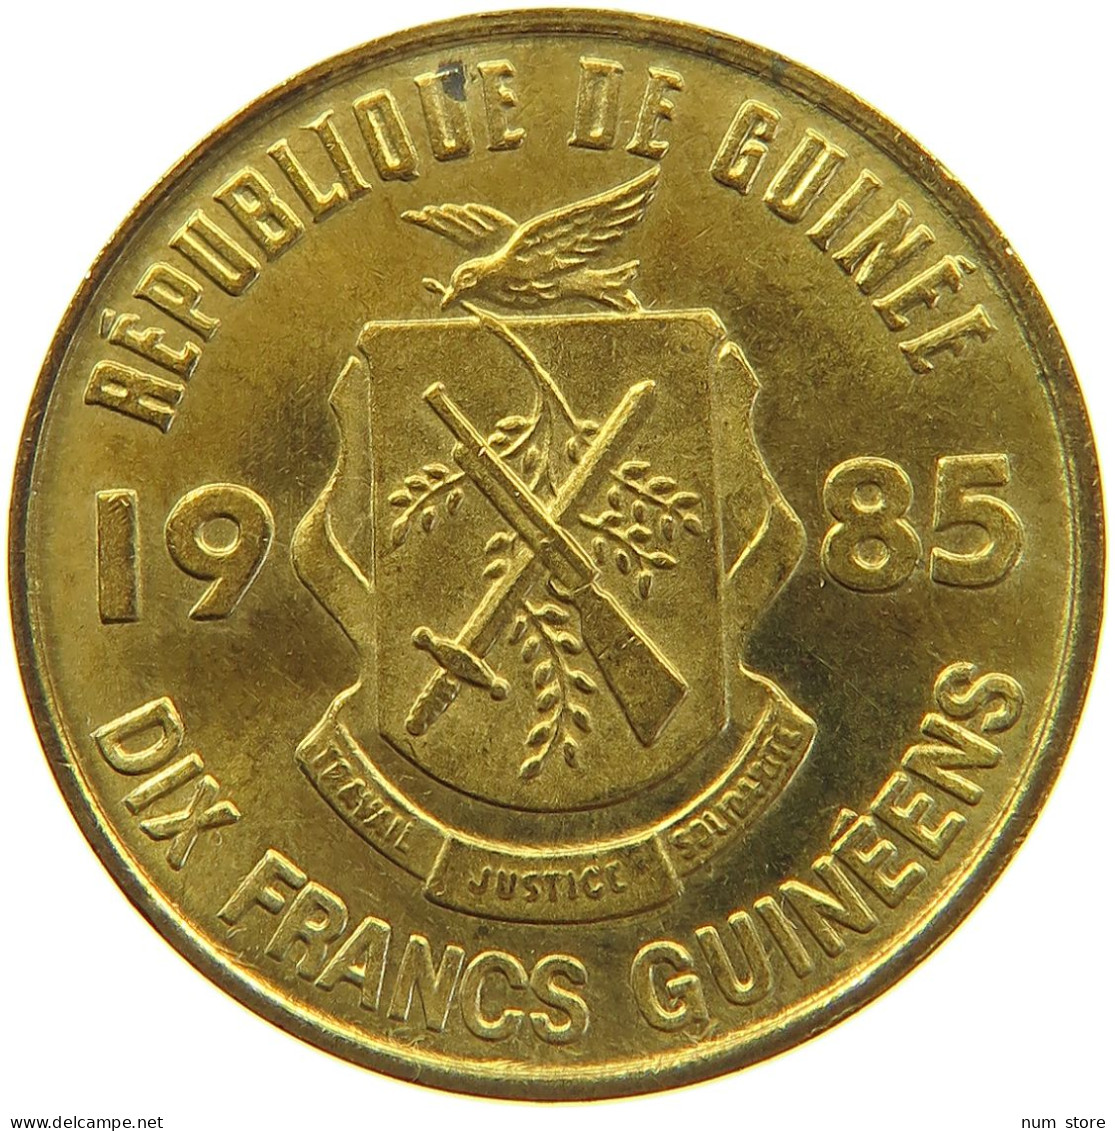 GUINEA 10 FRANCS 1985  #MA 066942 - Guinea